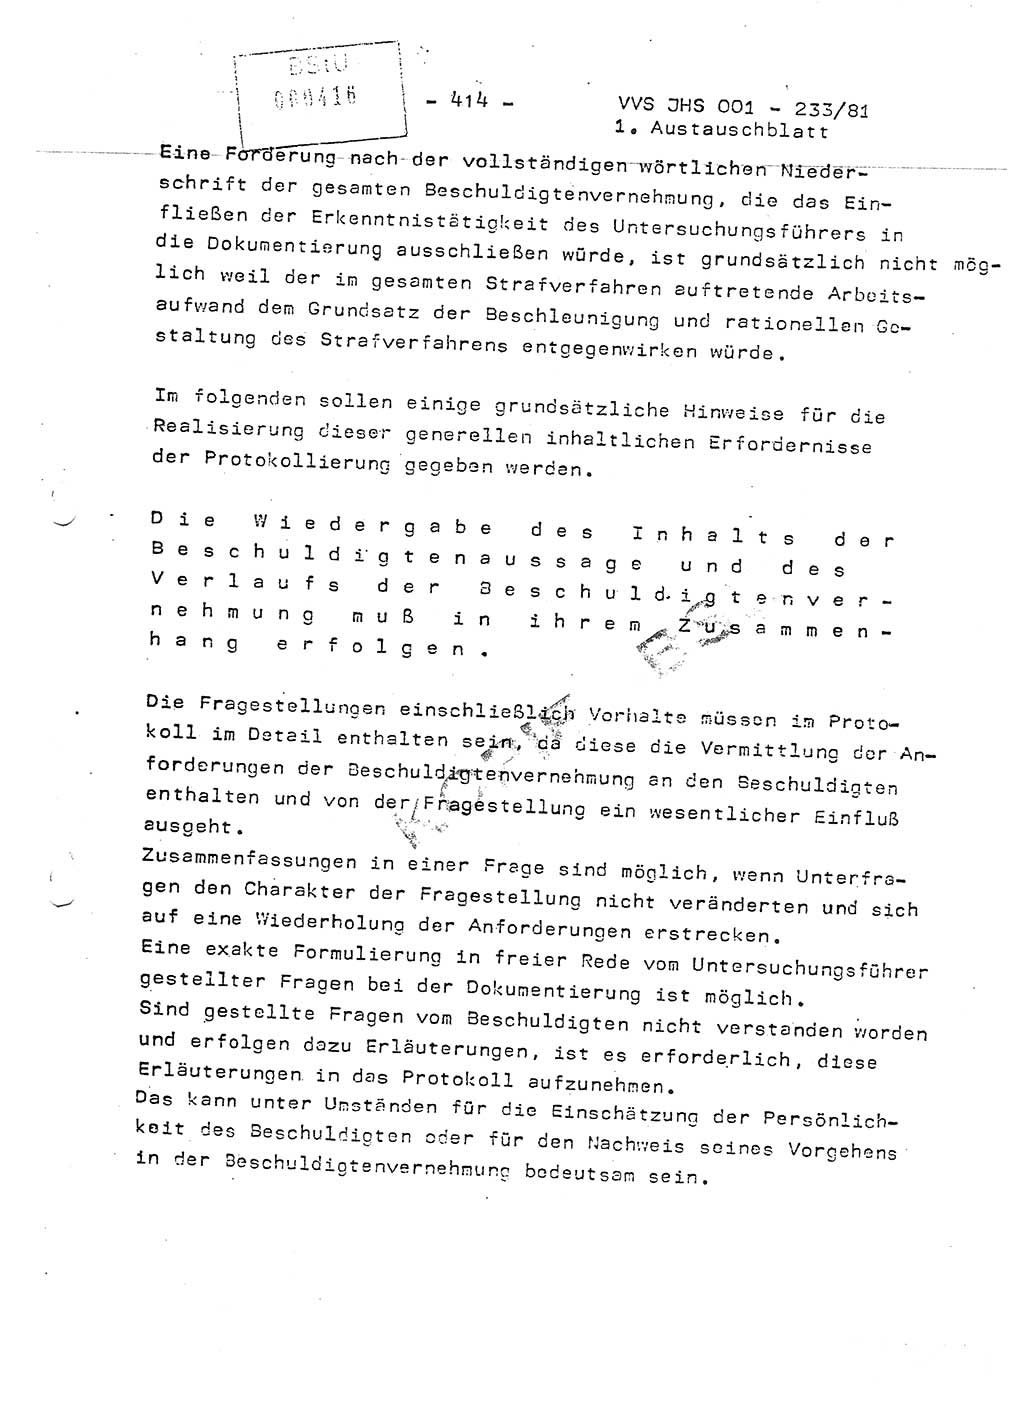 Dissertation Oberstleutnant Horst Zank (JHS), Oberstleutnant Dr. Karl-Heinz Knoblauch (JHS), Oberstleutnant Gustav-Adolf Kowalewski (HA Ⅸ), Oberstleutnant Wolfgang Plötner (HA Ⅸ), Ministerium für Staatssicherheit (MfS) [Deutsche Demokratische Republik (DDR)], Juristische Hochschule (JHS), Vertrauliche Verschlußsache (VVS) o001-233/81, Potsdam 1981, Blatt 414 (Diss. MfS DDR JHS VVS o001-233/81 1981, Bl. 414)